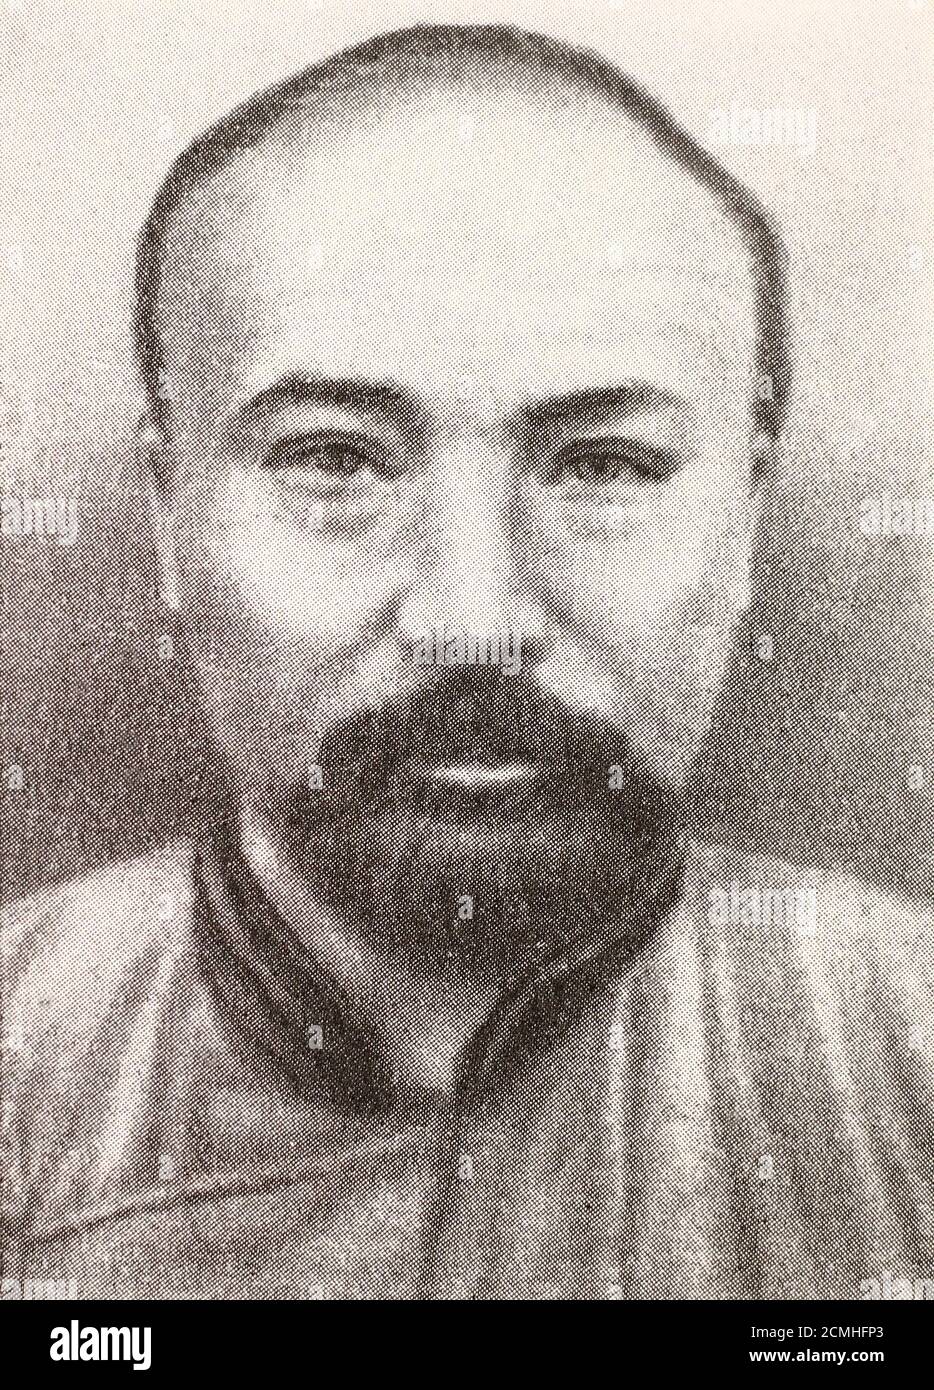 Li Dazhao (29 de octubre de 1889 – 28 de abril de 1927) fue un intelectual radical chino que desempeñó un papel clave en el Nuevo Movimiento Cultural en los primeros años de la República de China, que se estableció en 1912. Cofundó el Partido Comunista Chino (CPC) con Chen Duxiu y otros activistas comunistas tempranos en julio de 1921. Fue instrumental en la construcción de un frente unido entre la CPC y el Partido Nacionalista de Sun Yat-sen a principios de 1924. Durante la expedición del Norte, Li fue detenido y luego ejecutado por el señor de la guerra Zhang Zuolin en Beijing en 1927. Foto de stock